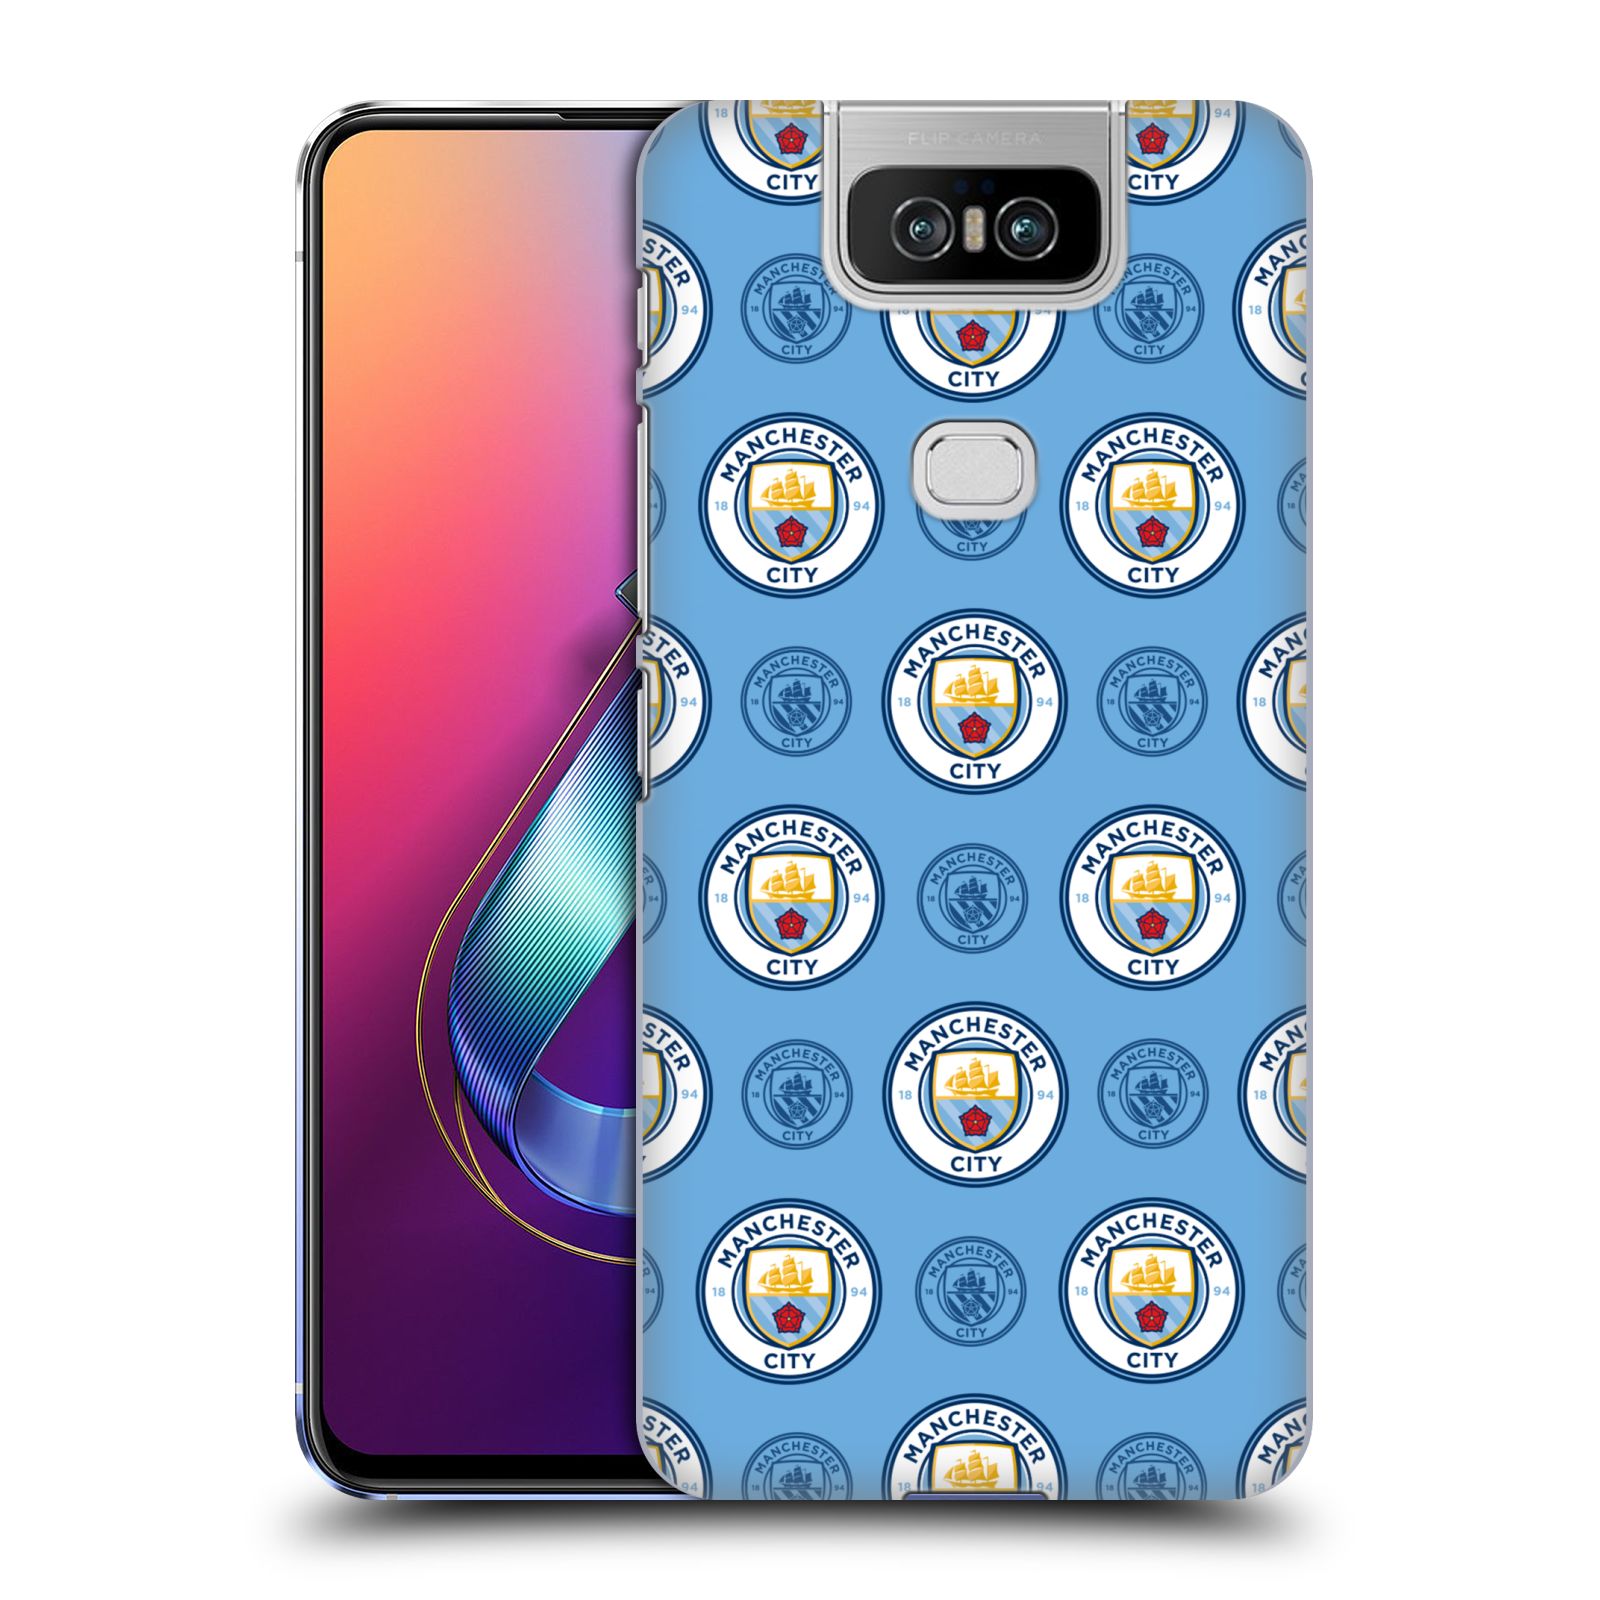 Pouzdro na mobil Asus Zenfone 6 ZS630KL - HEAD CASE - Fotbalový klub Manchester City modrý vzorkovaný malé znaky